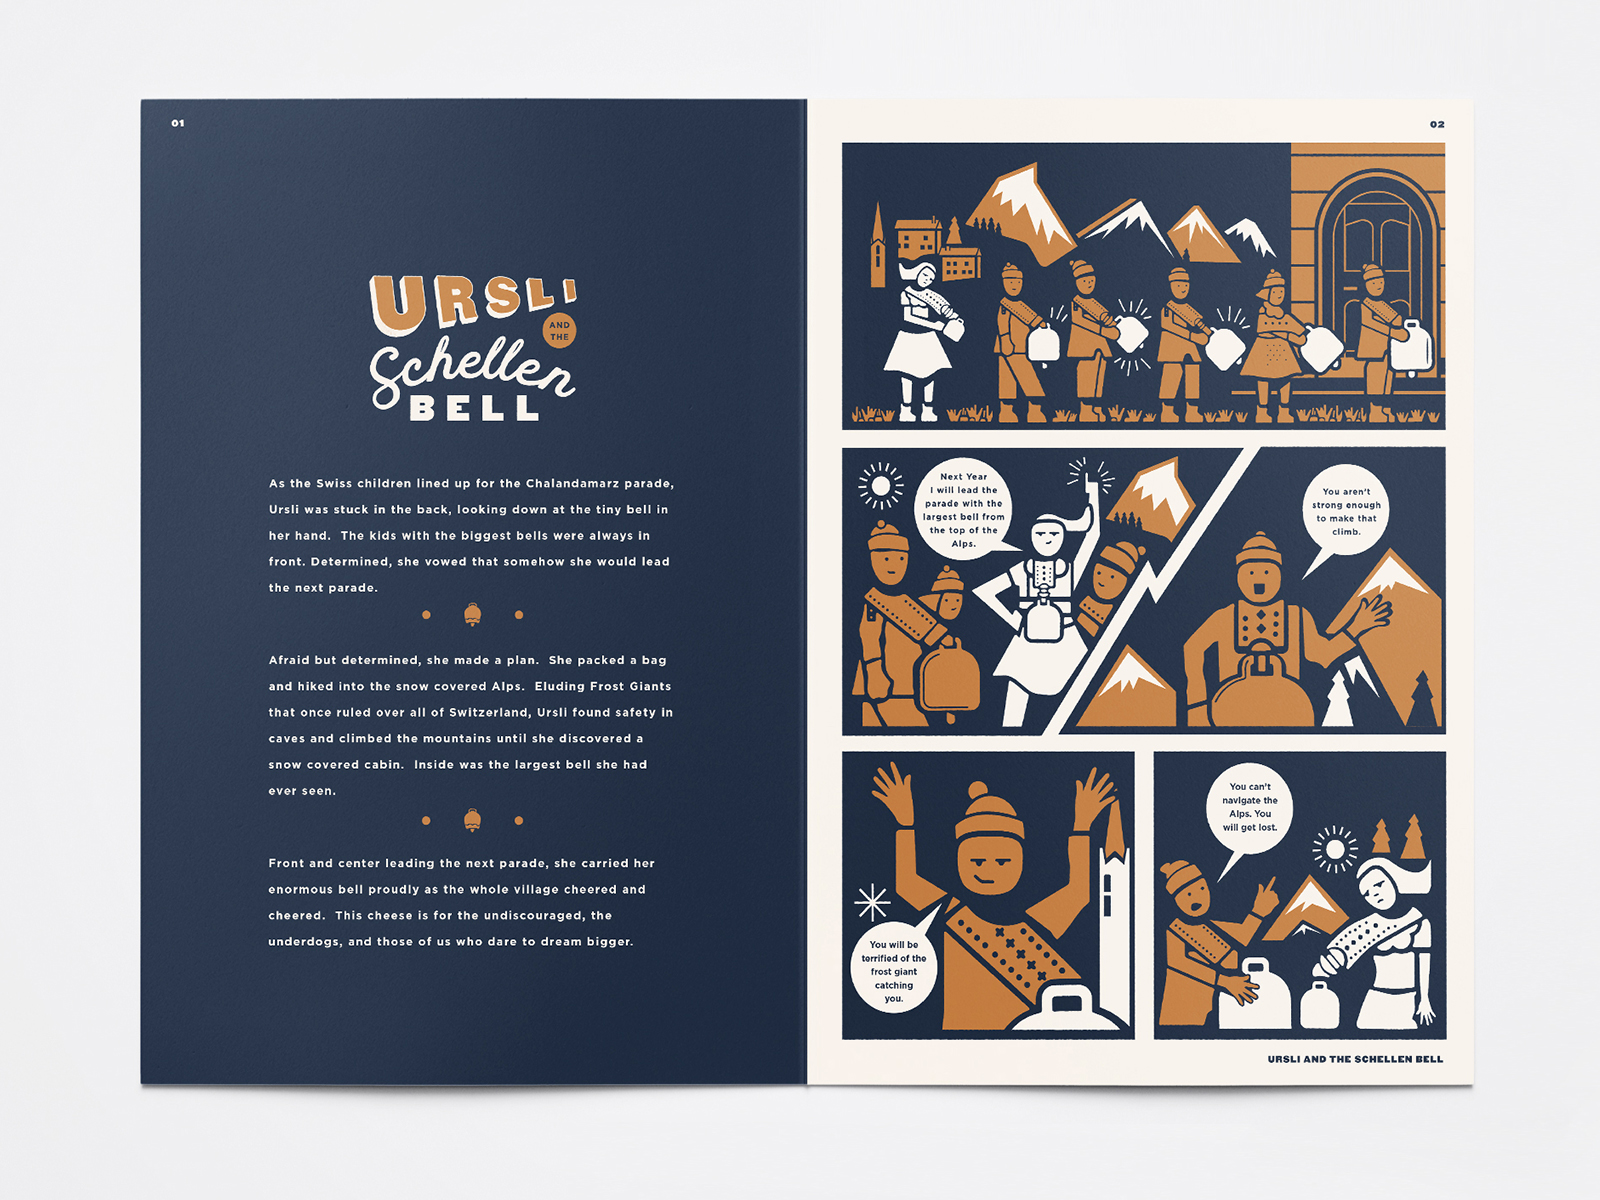 comic-book-dribbble-behance-new-york-schellen-bell-story-illustration-illustrator-zeki-michael-adobe-vector-panel-shot-designer-branding-packaging-book-editorial